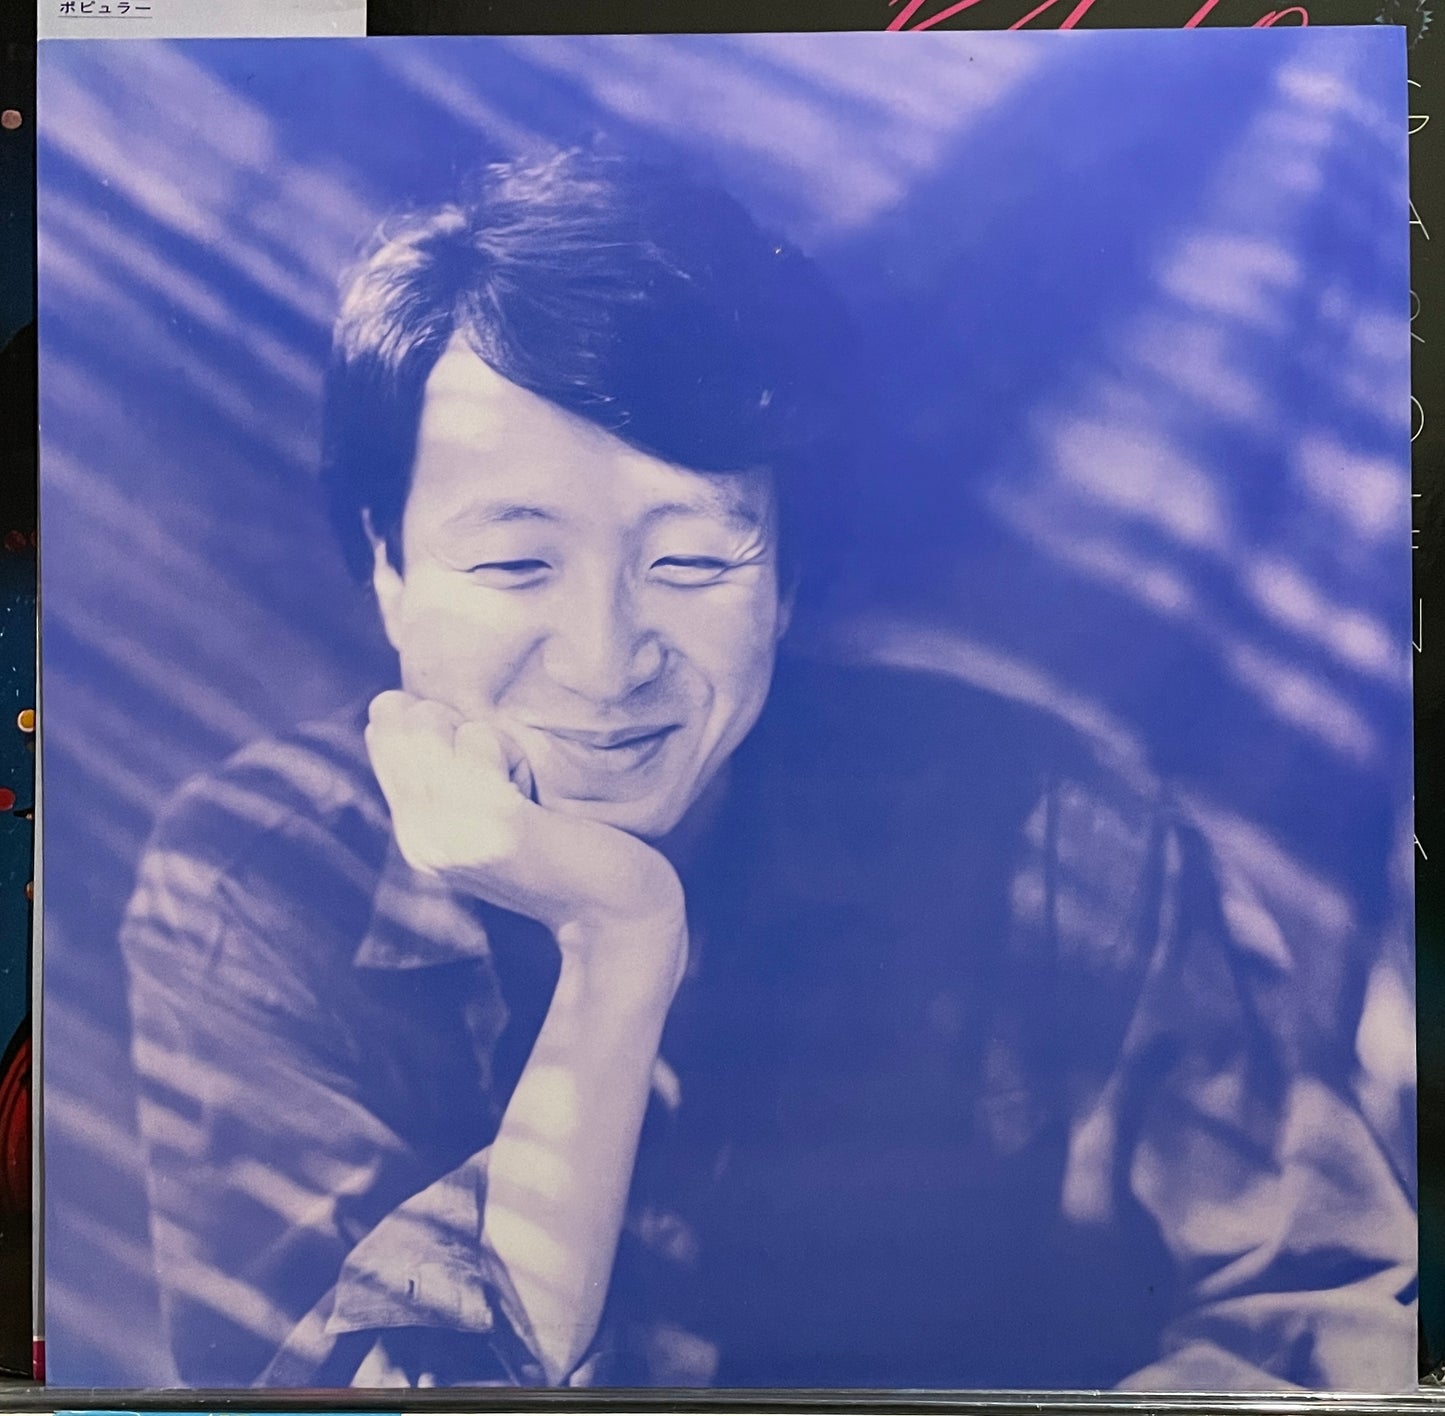 Kazuhiko Kato “Gardenia” (1978)